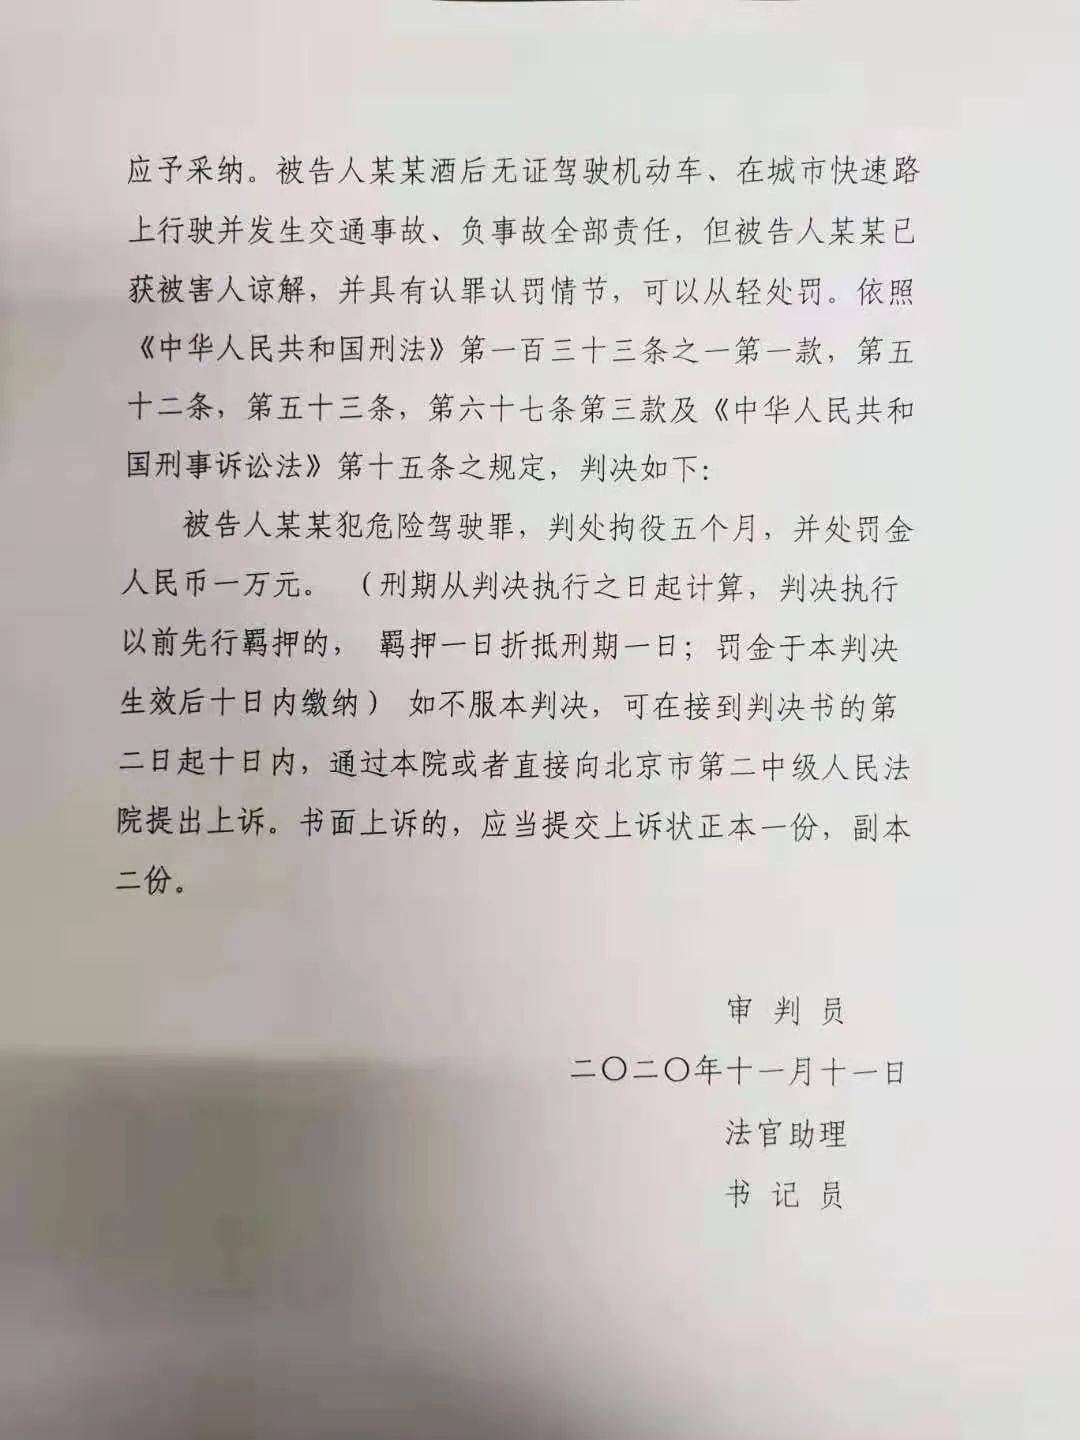 于是东城法院作出了一审判决:检察官 王平北京市东城区人民检察院之后